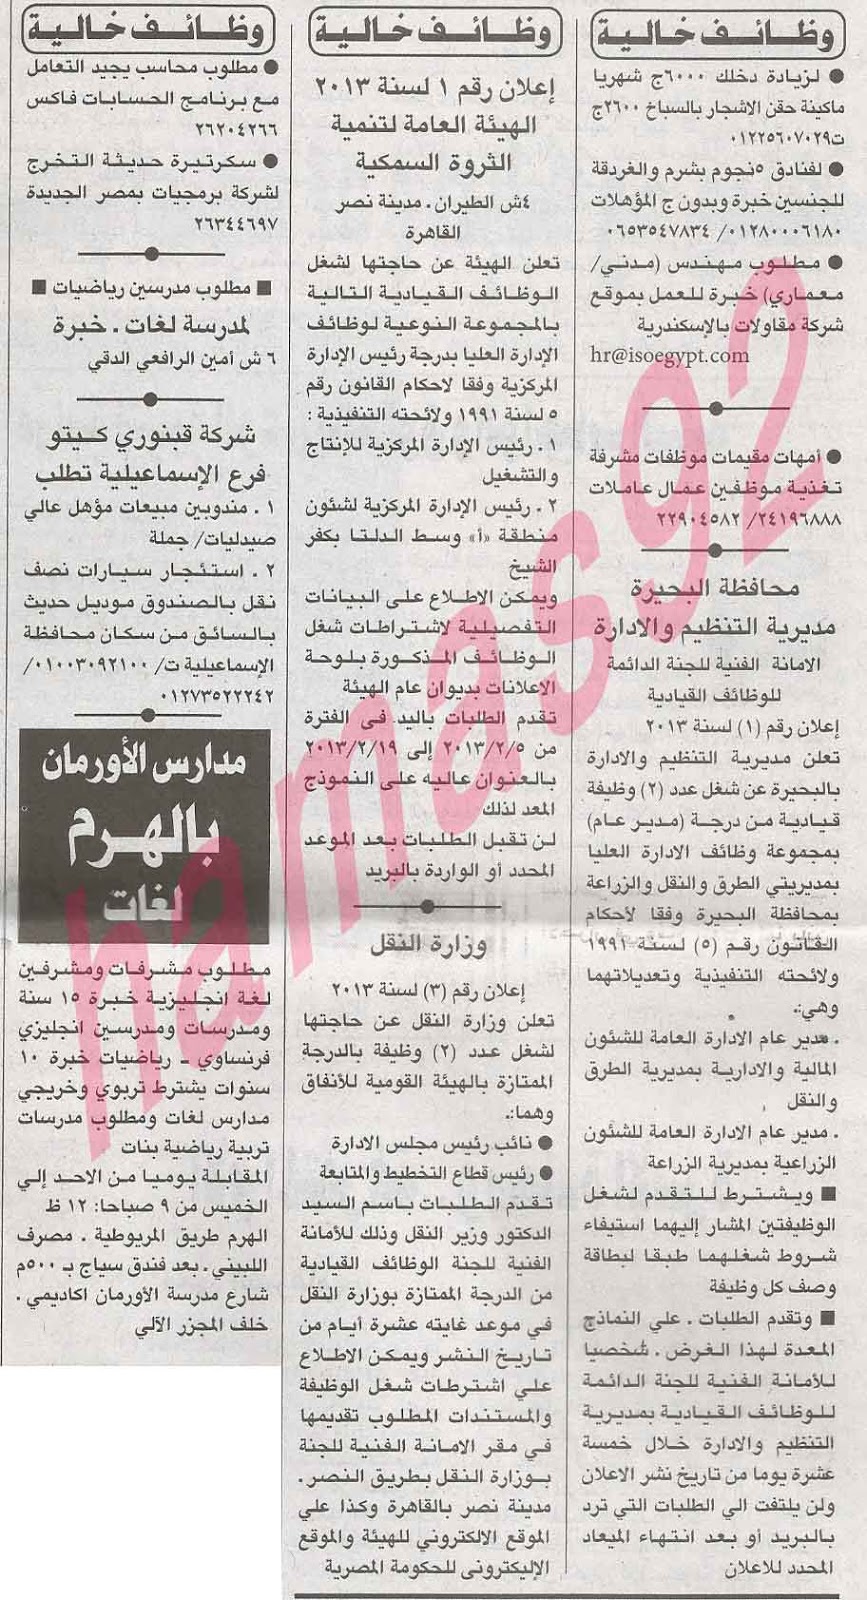 وظائف خالية من جريدة الاهرام المصرية اليوم الاحد 3/2/2013 %D8%A7%D9%84%D8%A7%D9%87%D8%B1%D8%A7%D9%85